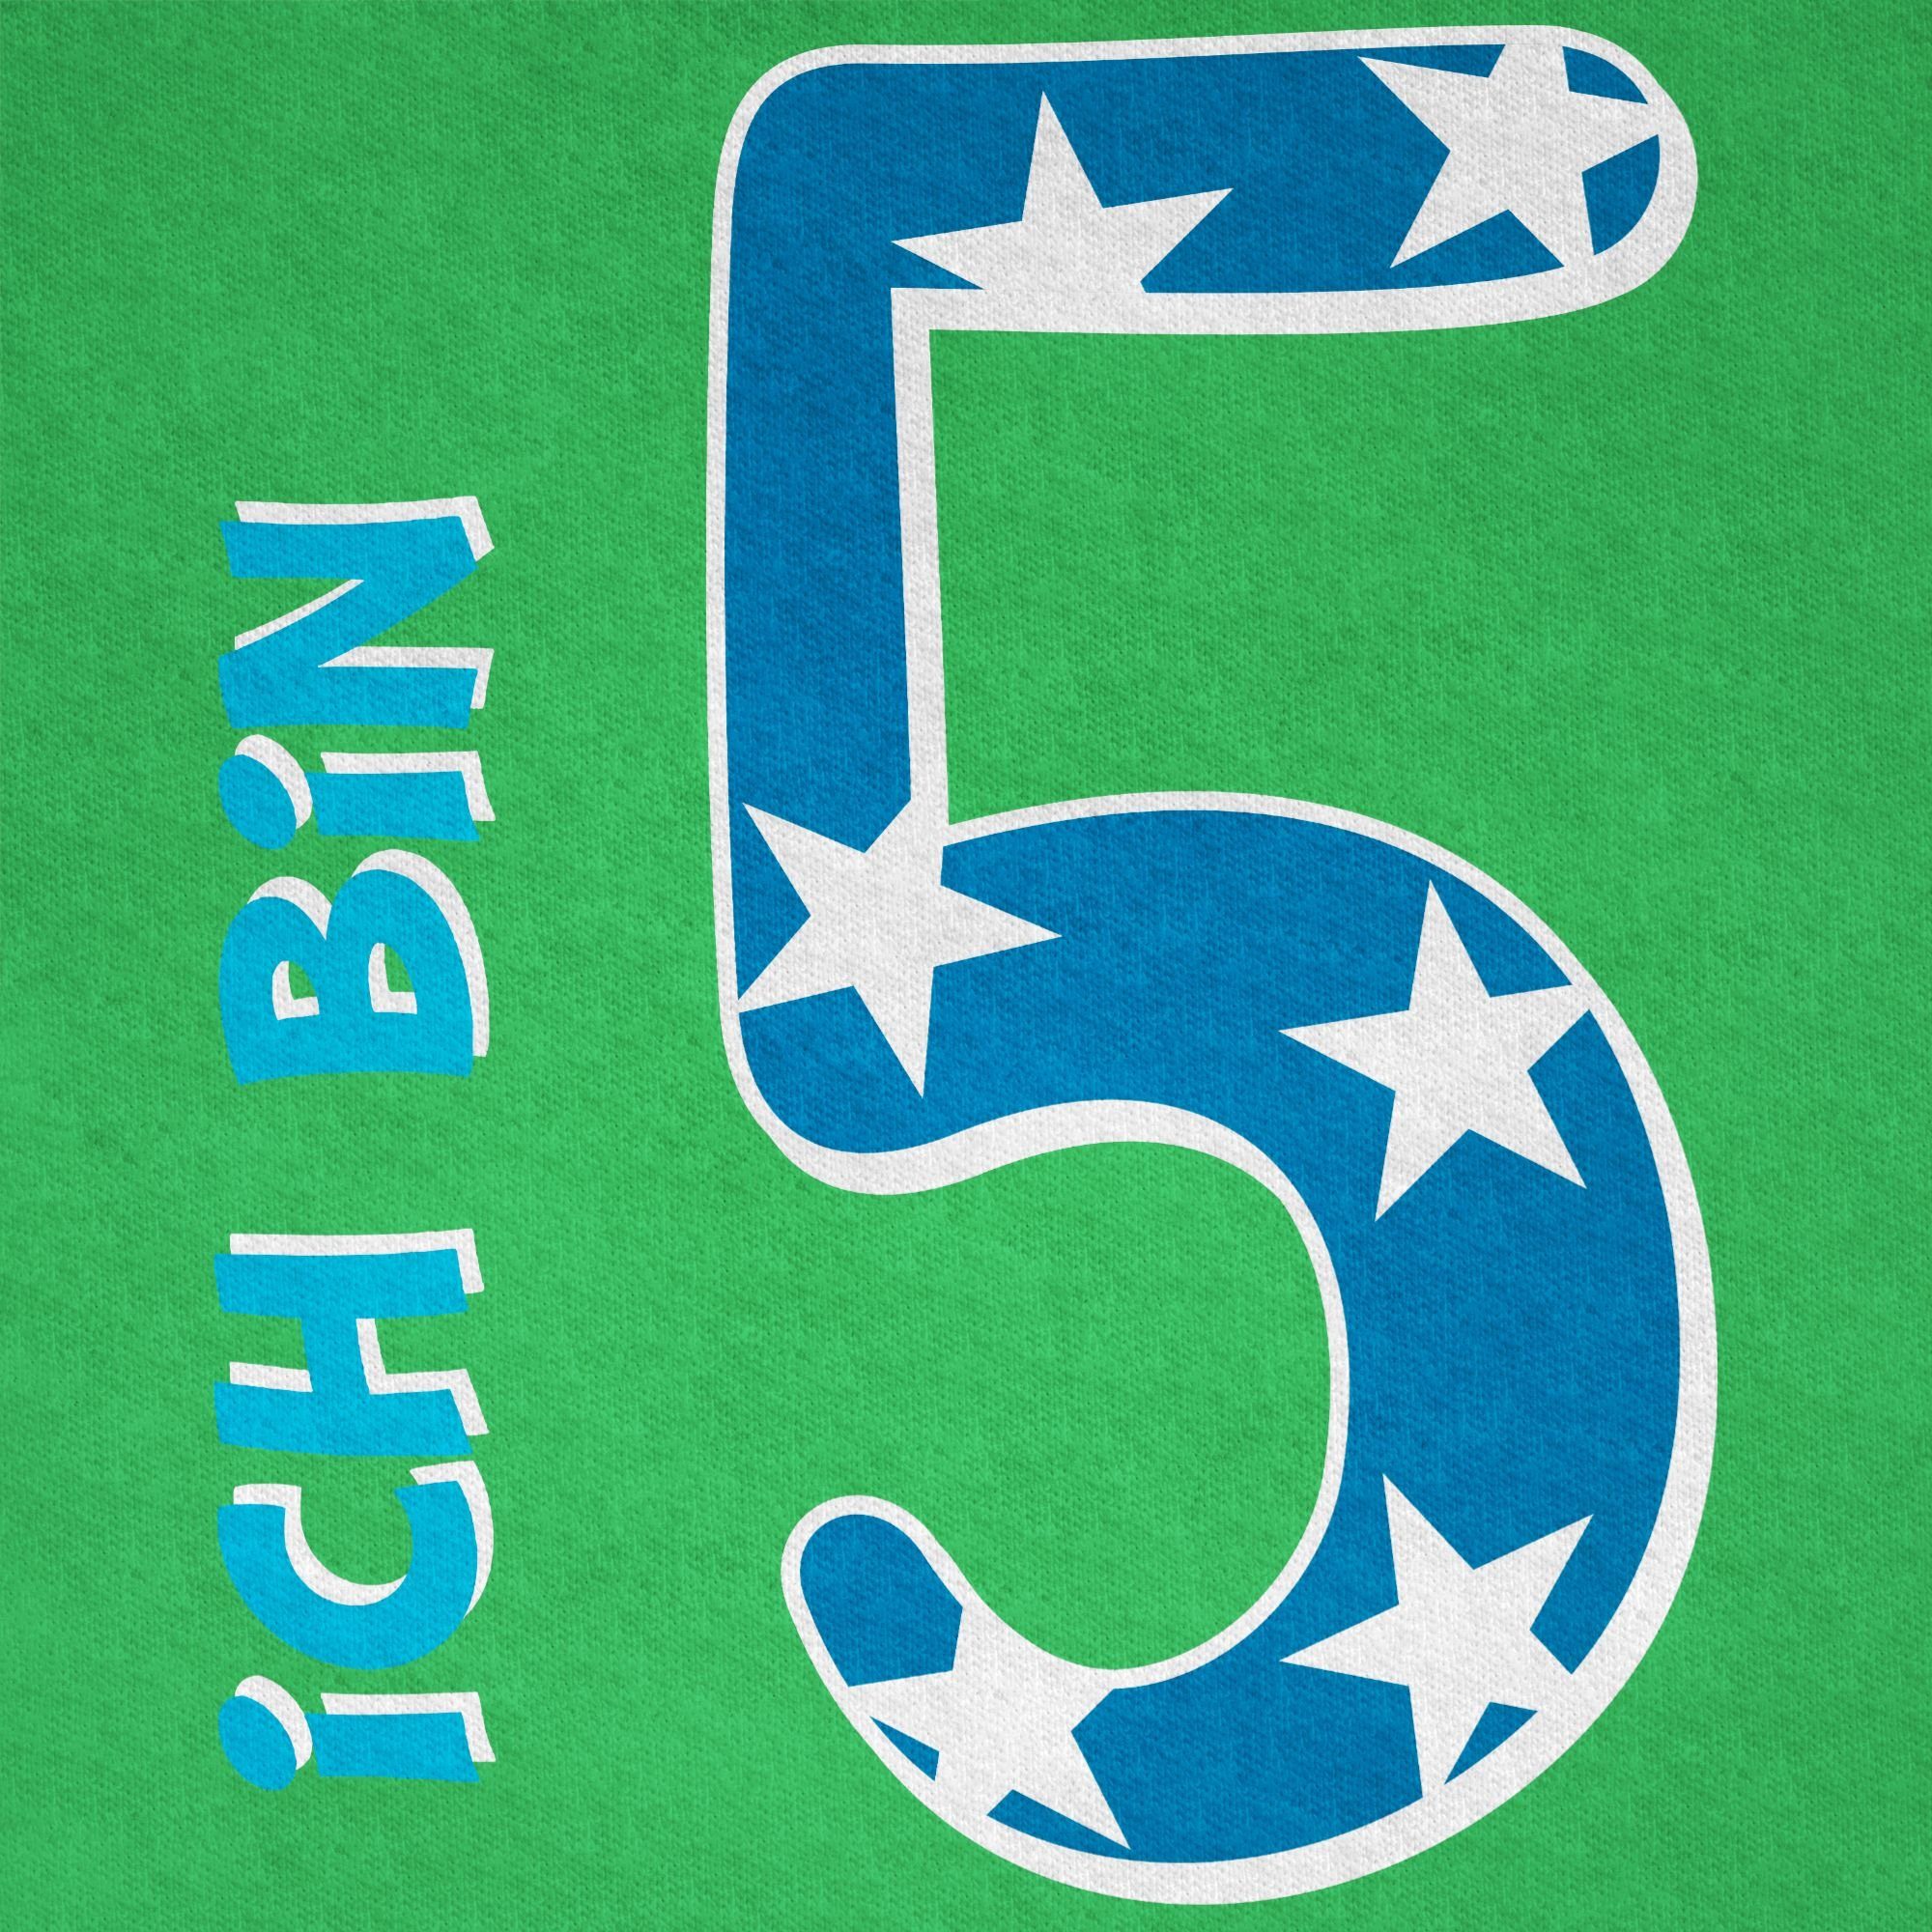 Shirtracer T-Shirt Ich bin fünf Geburtstag 5. Grün 3